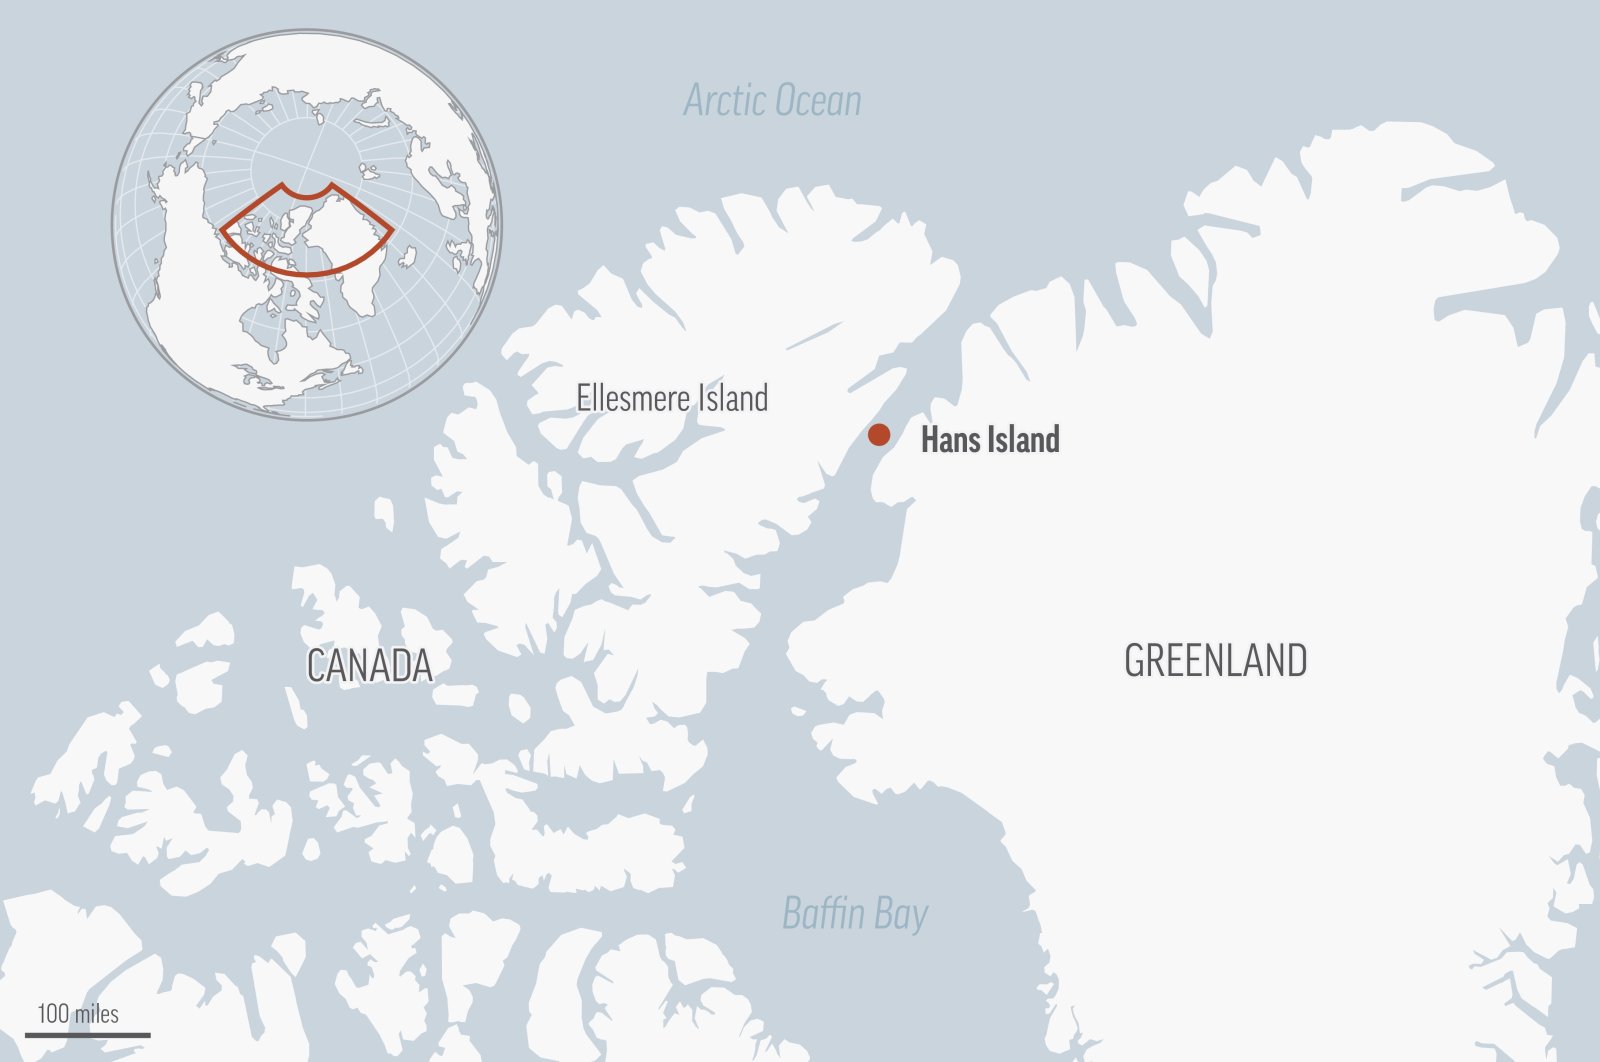 Perselisihan Denmark-Kanada di pulau kecil Arktik berakhir setelah 49 tahun